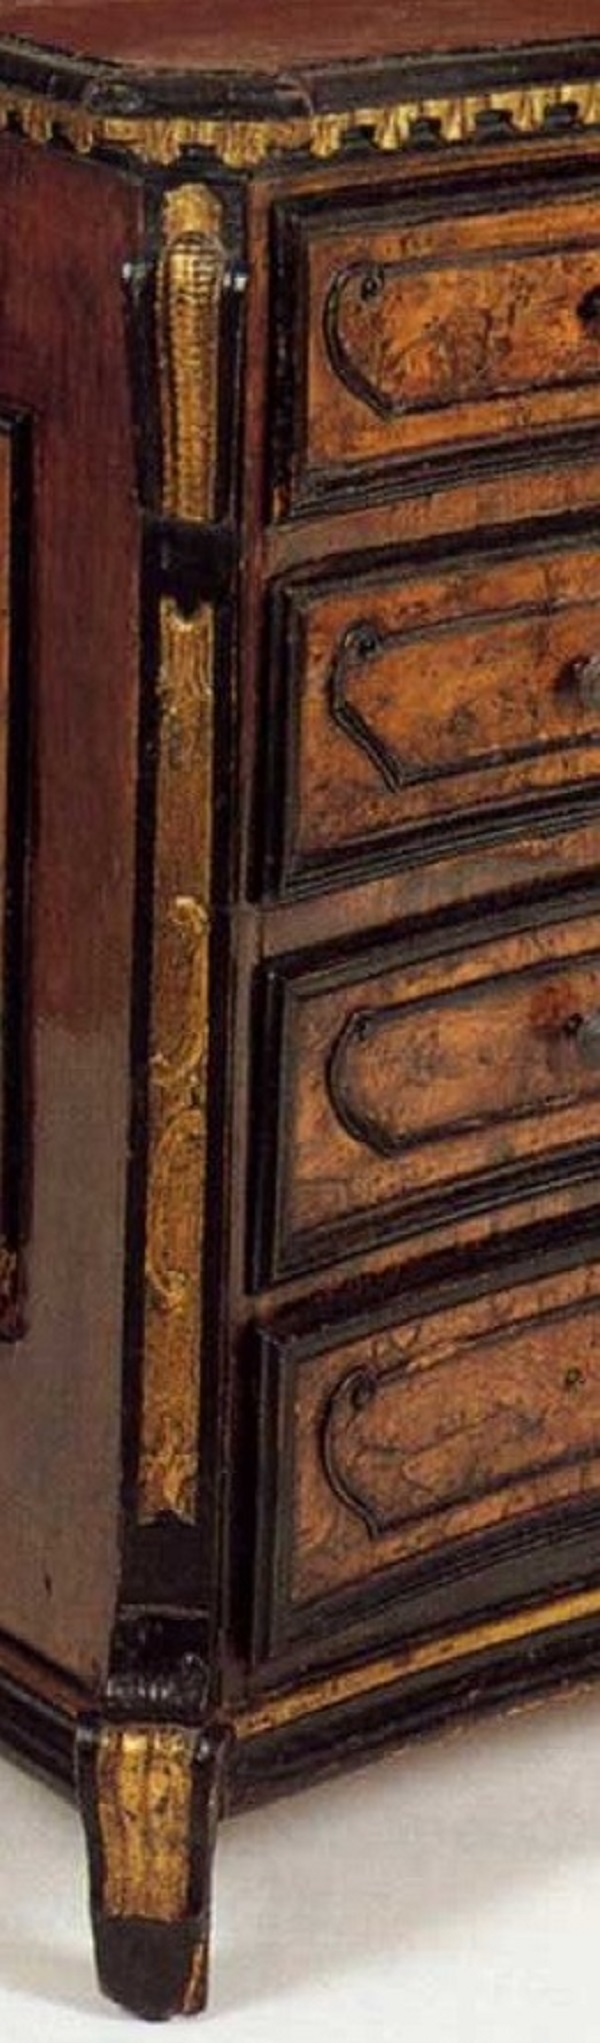 cassettone-lombardo-prima-metà-xviii-secolo